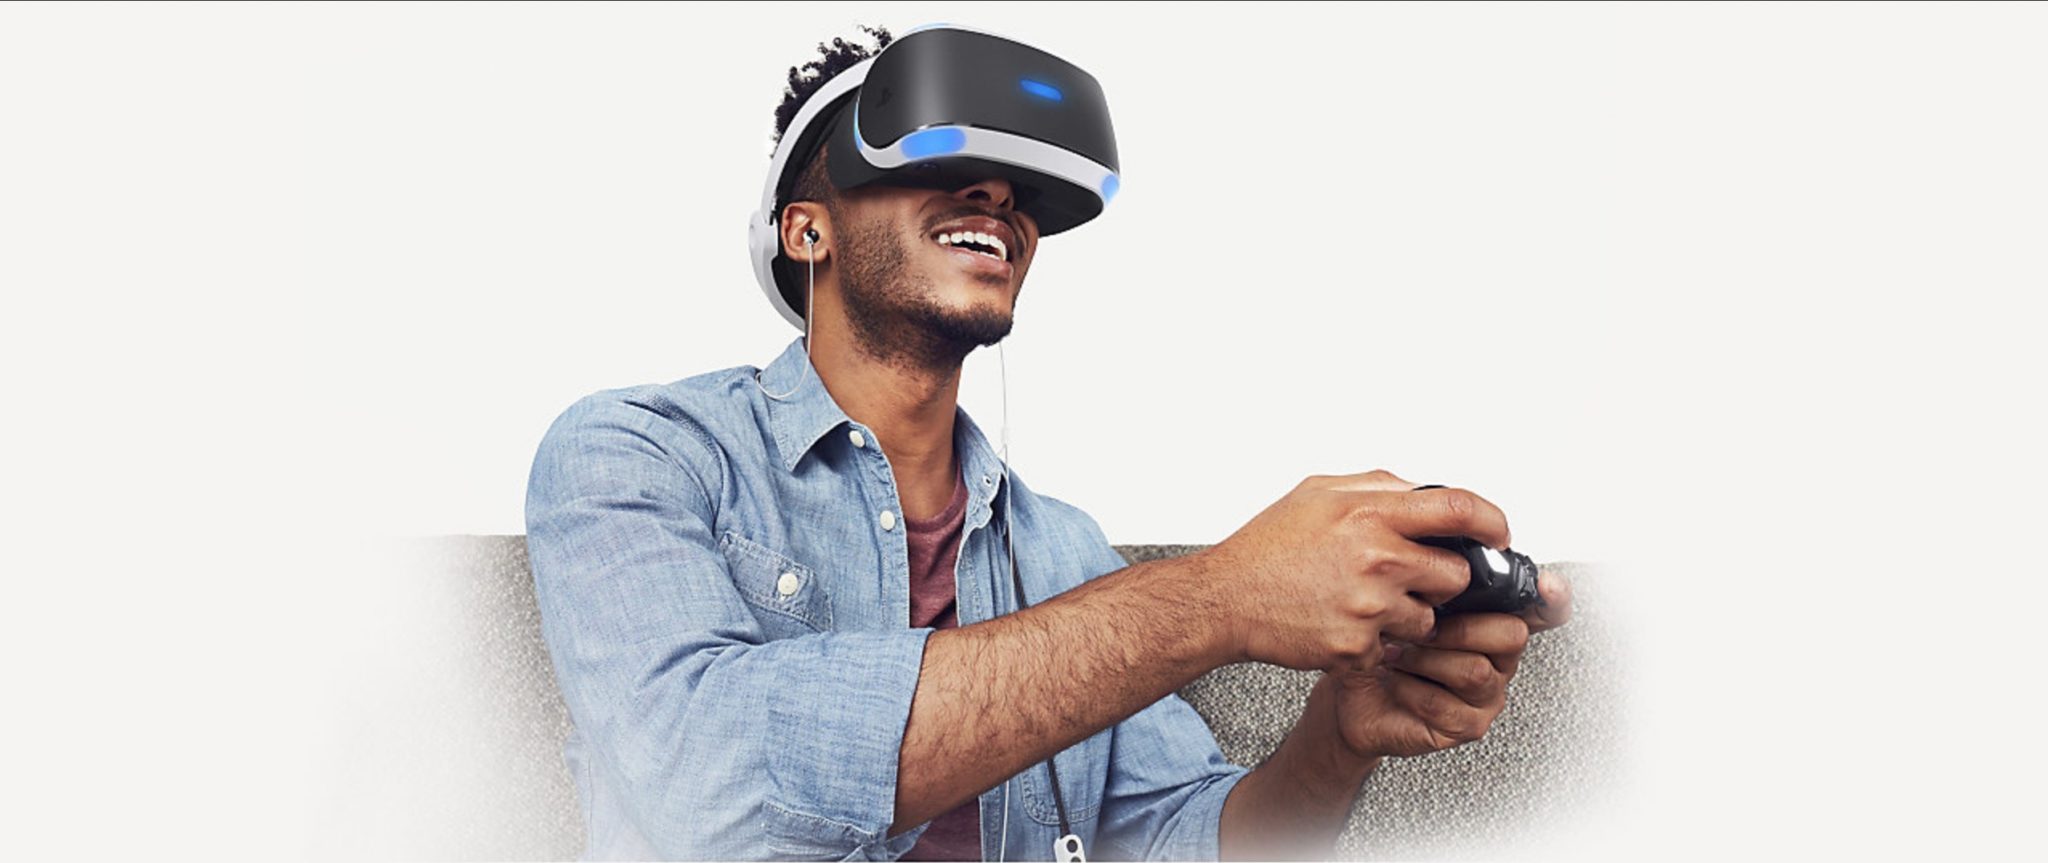 Le PlayStation VR est vraiment excitant !